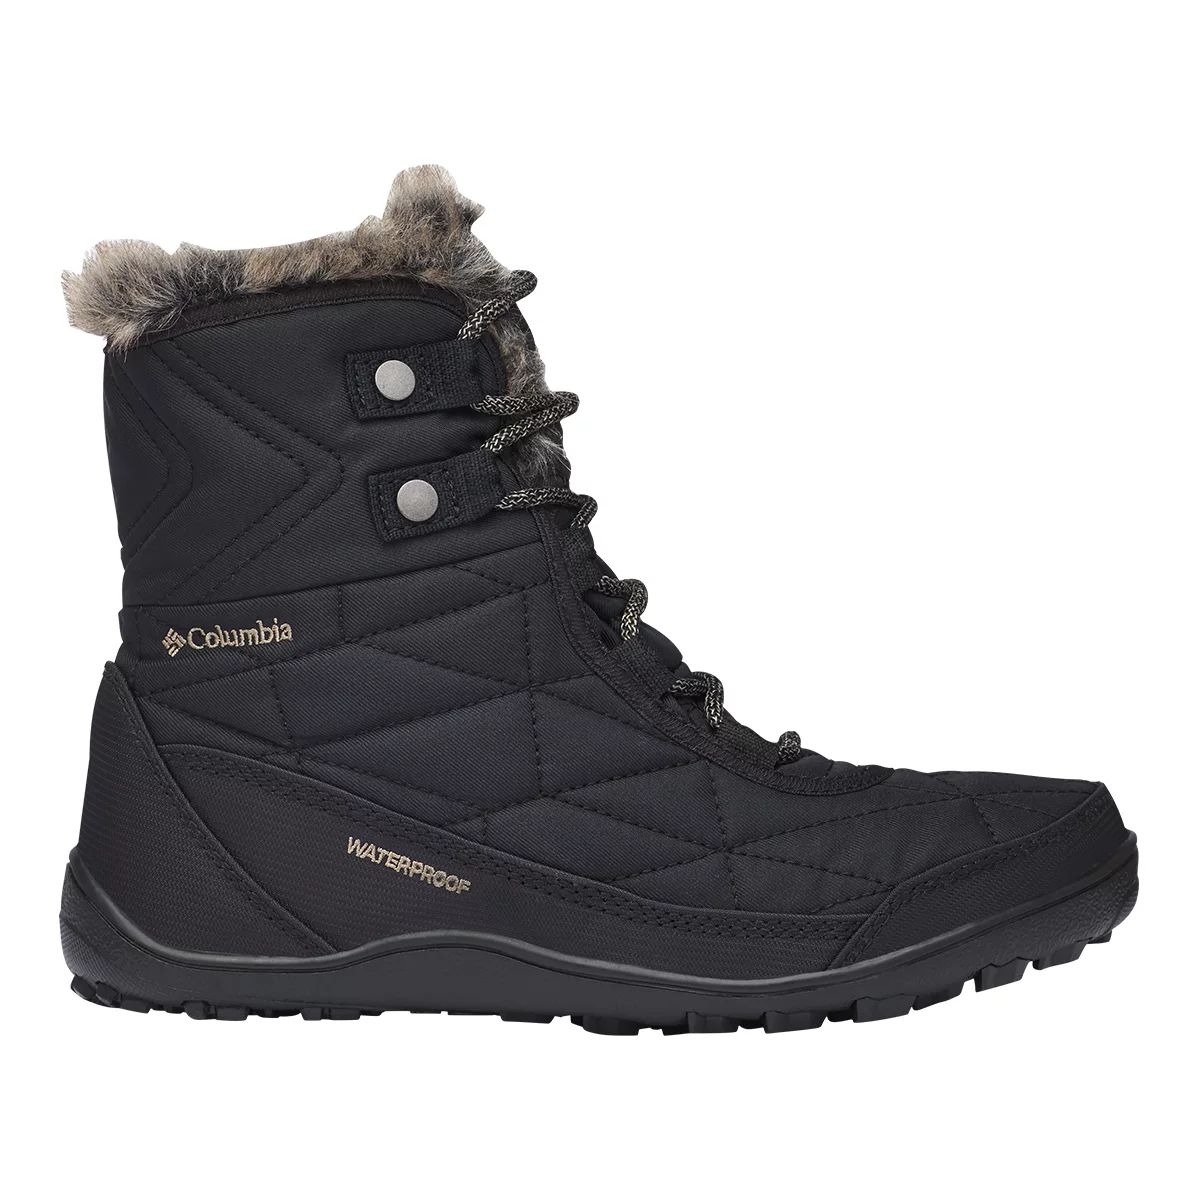 Columbia Women's Minx Shorty III Winter Boots  Low Top Waterproof Non Slip Faux Fur